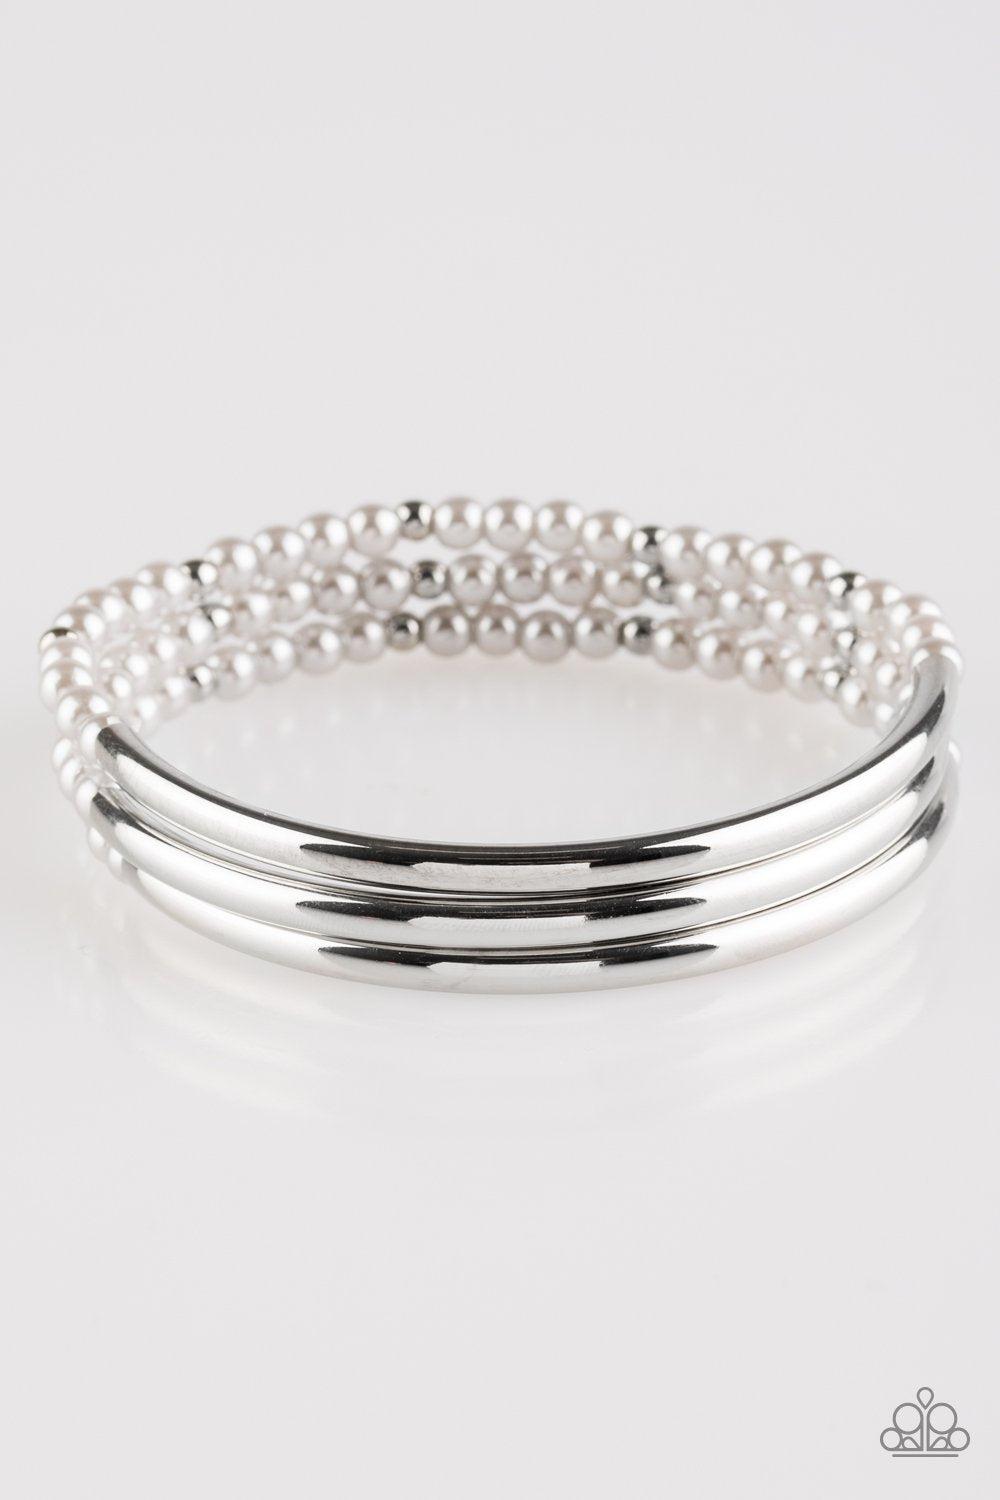 City Pretty Silver Stretch Bracelet Set - Paparazzi Accessories-CarasShop.com - $5 Jewelry by Cara Jewels